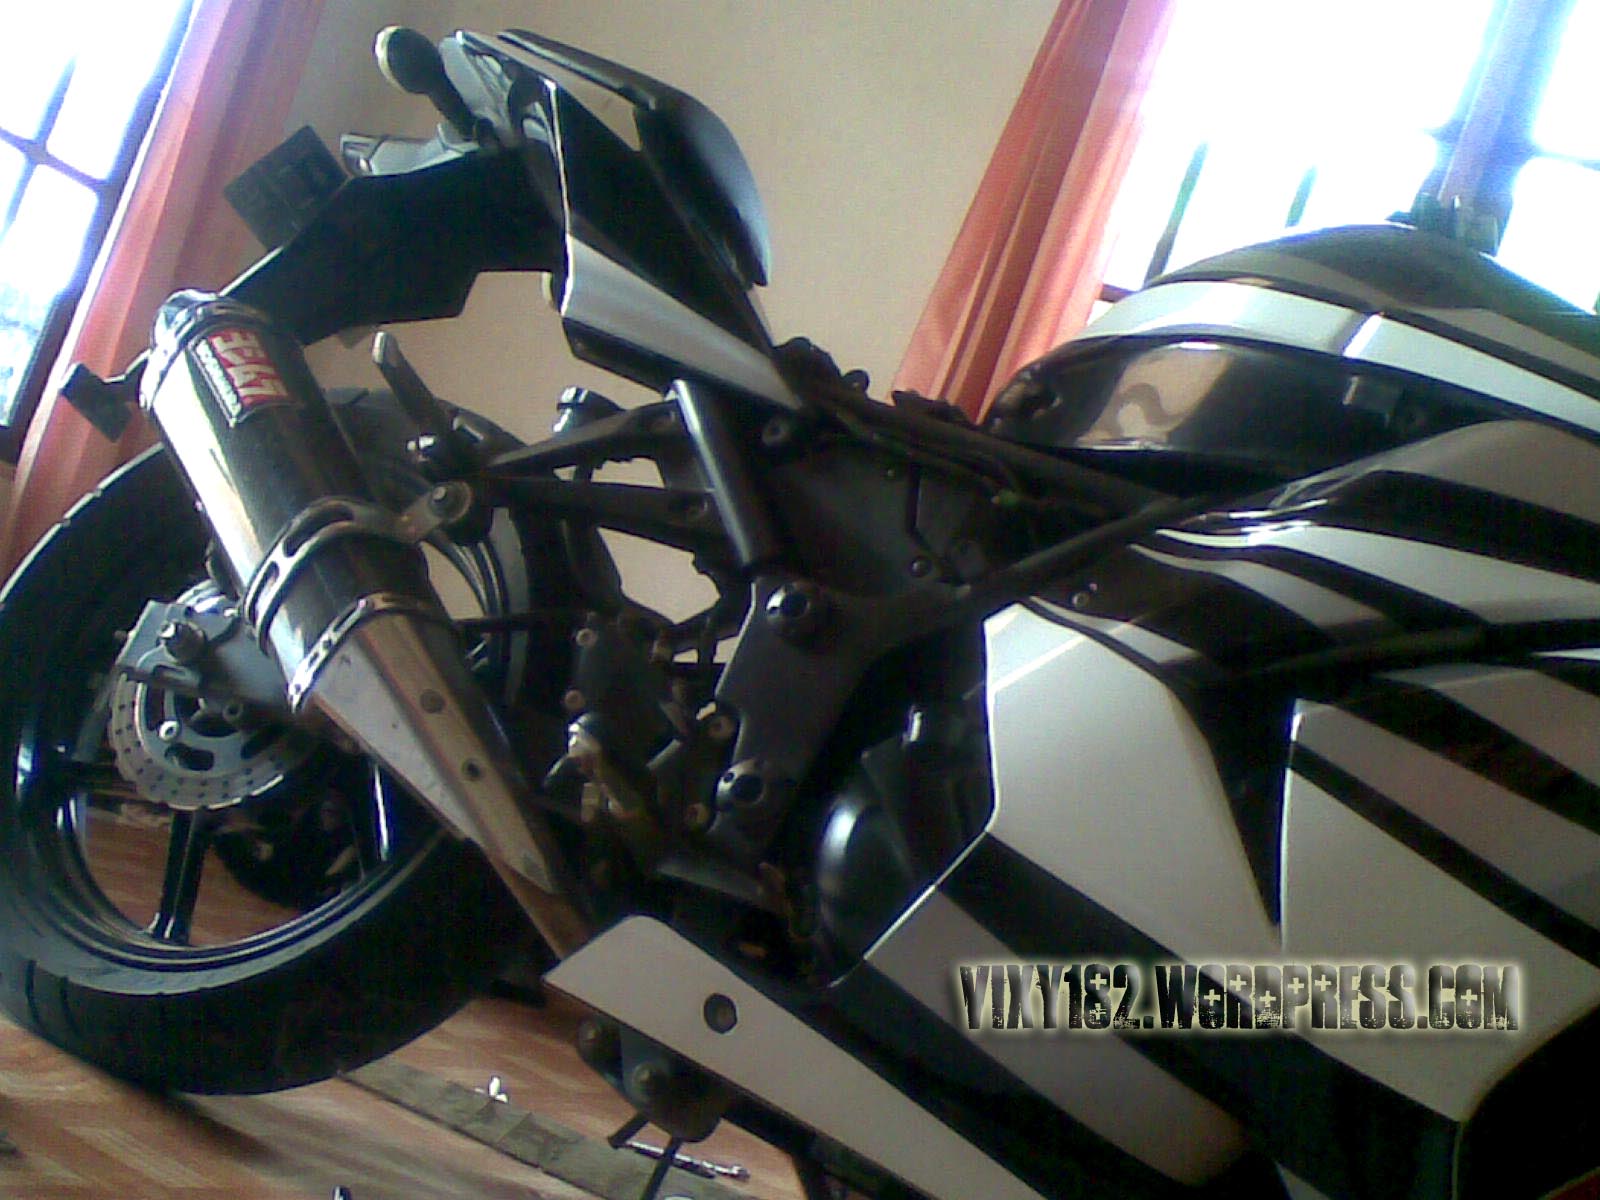 Tangki Motor Old Ninja 250 Bocor Bro Vixy182s Blog